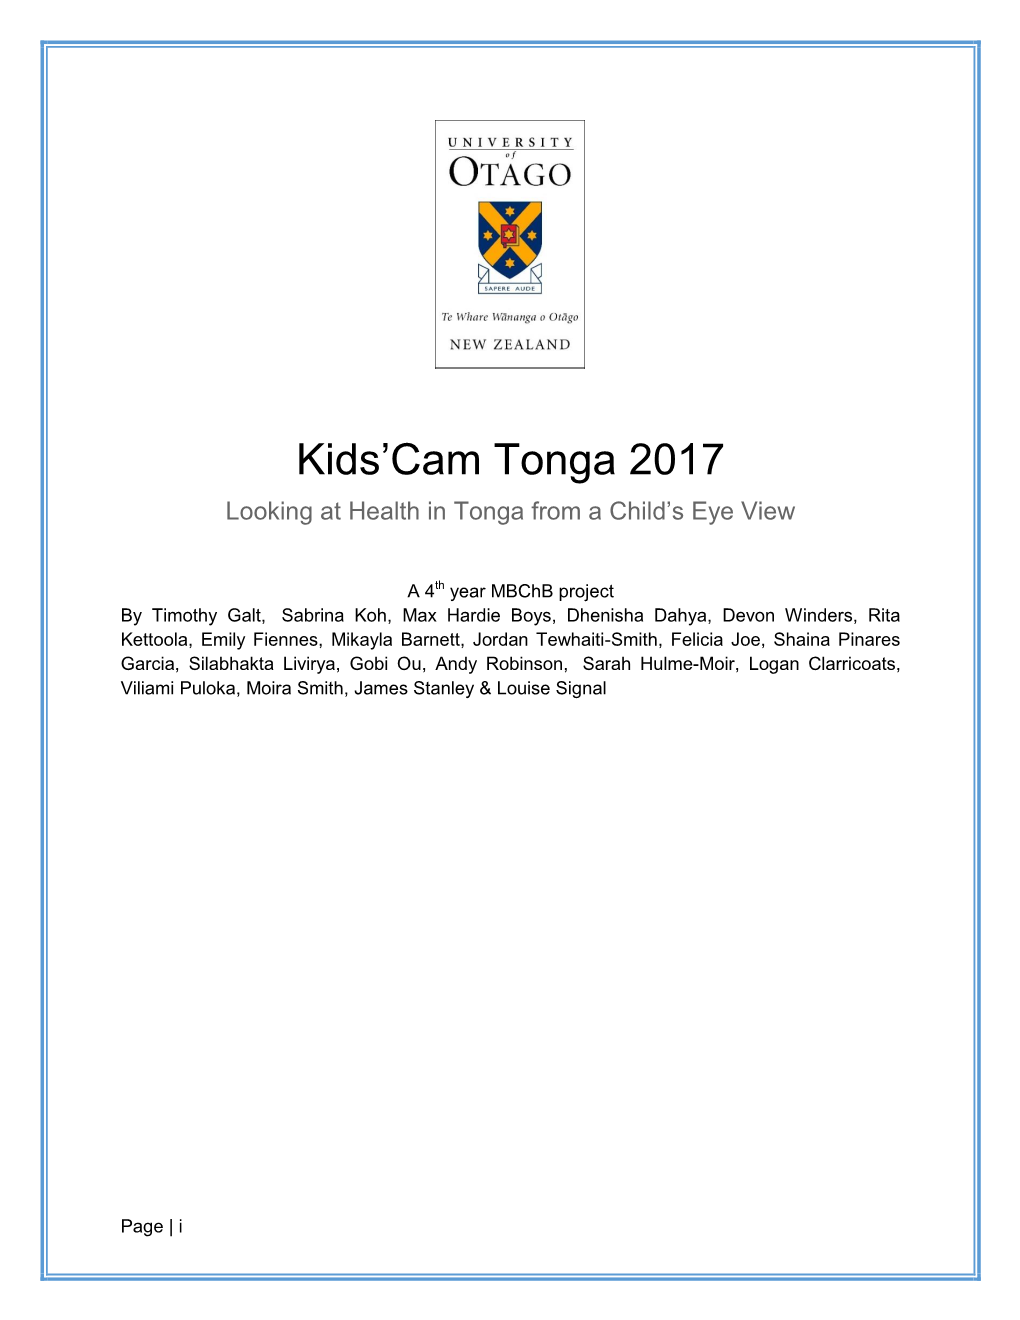 Kids'cam Tonga 2017